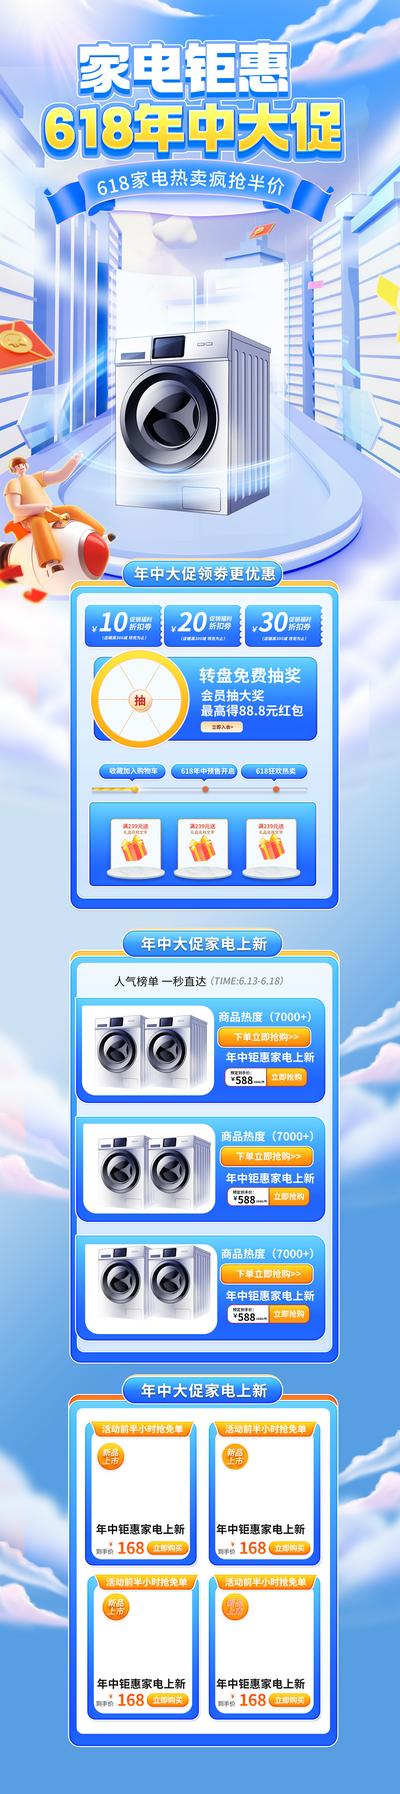 南门网 广告 海报 促销 618 电商 专题 大促 冰箱 电器